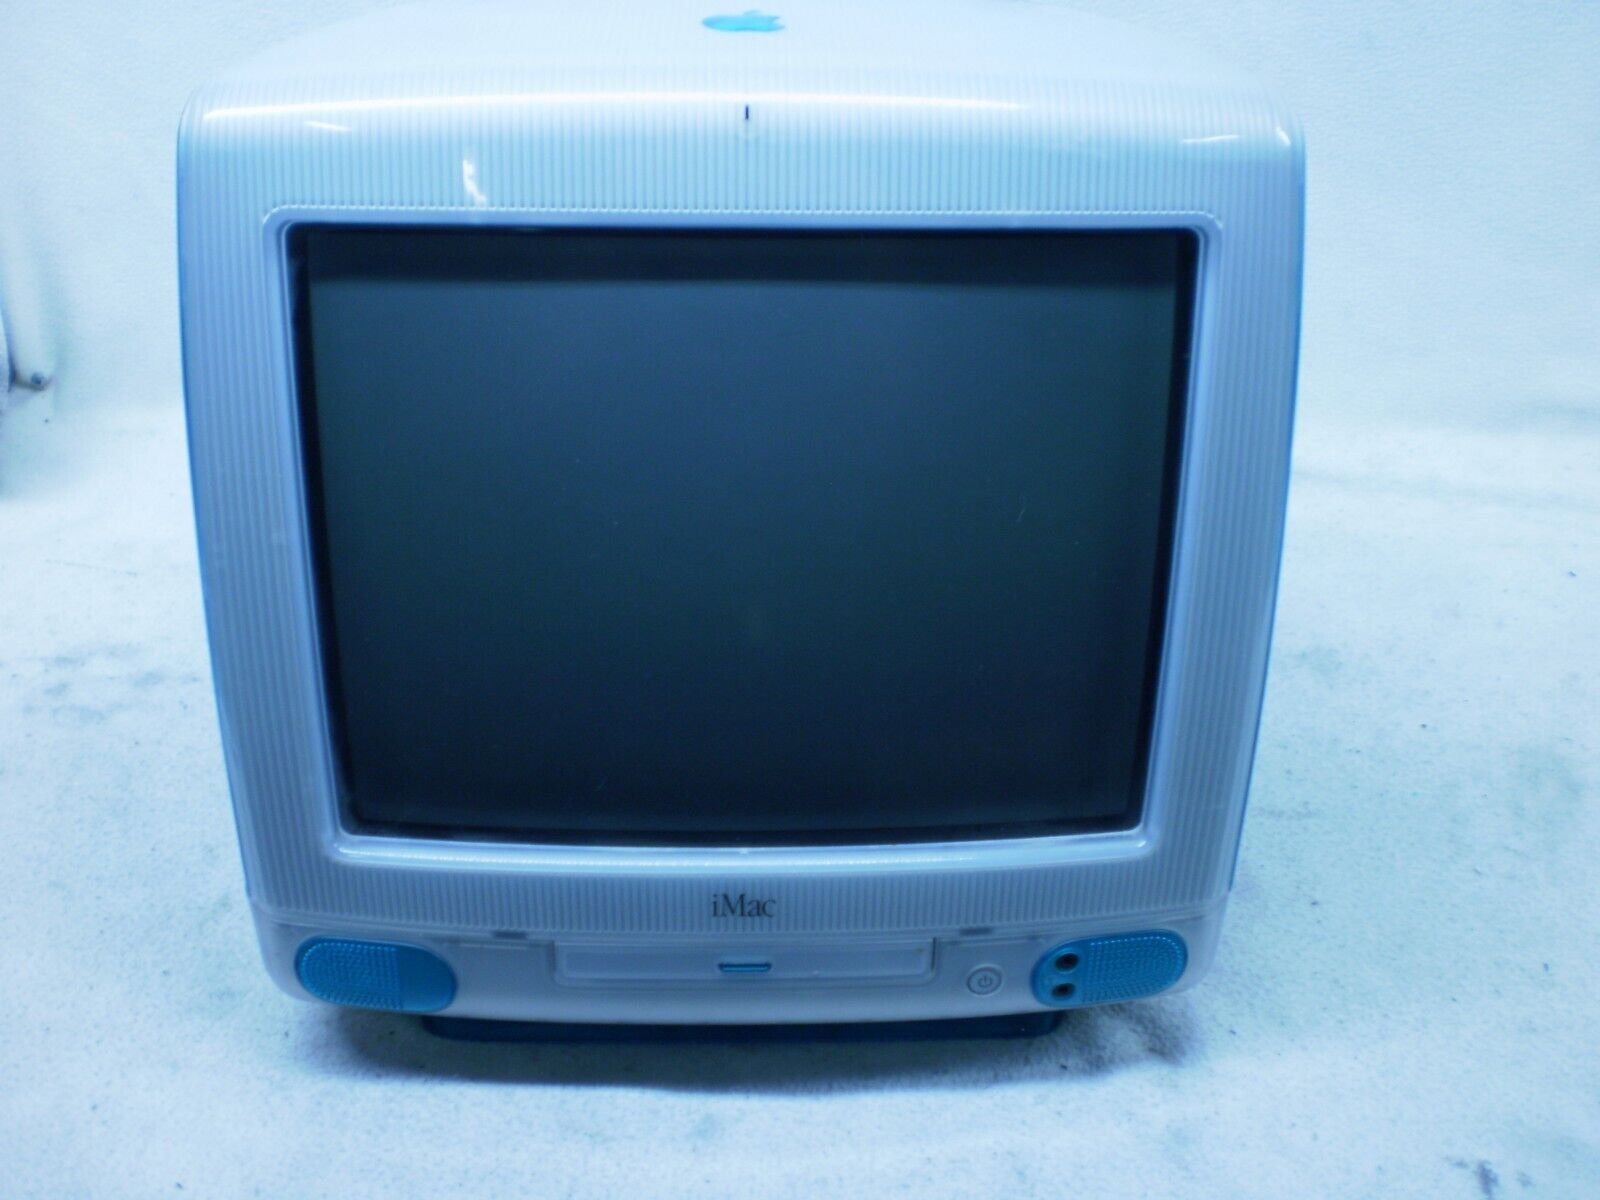 Vintage Apple Computer iMac G3 M4984 Blue Desktop, W/ AC